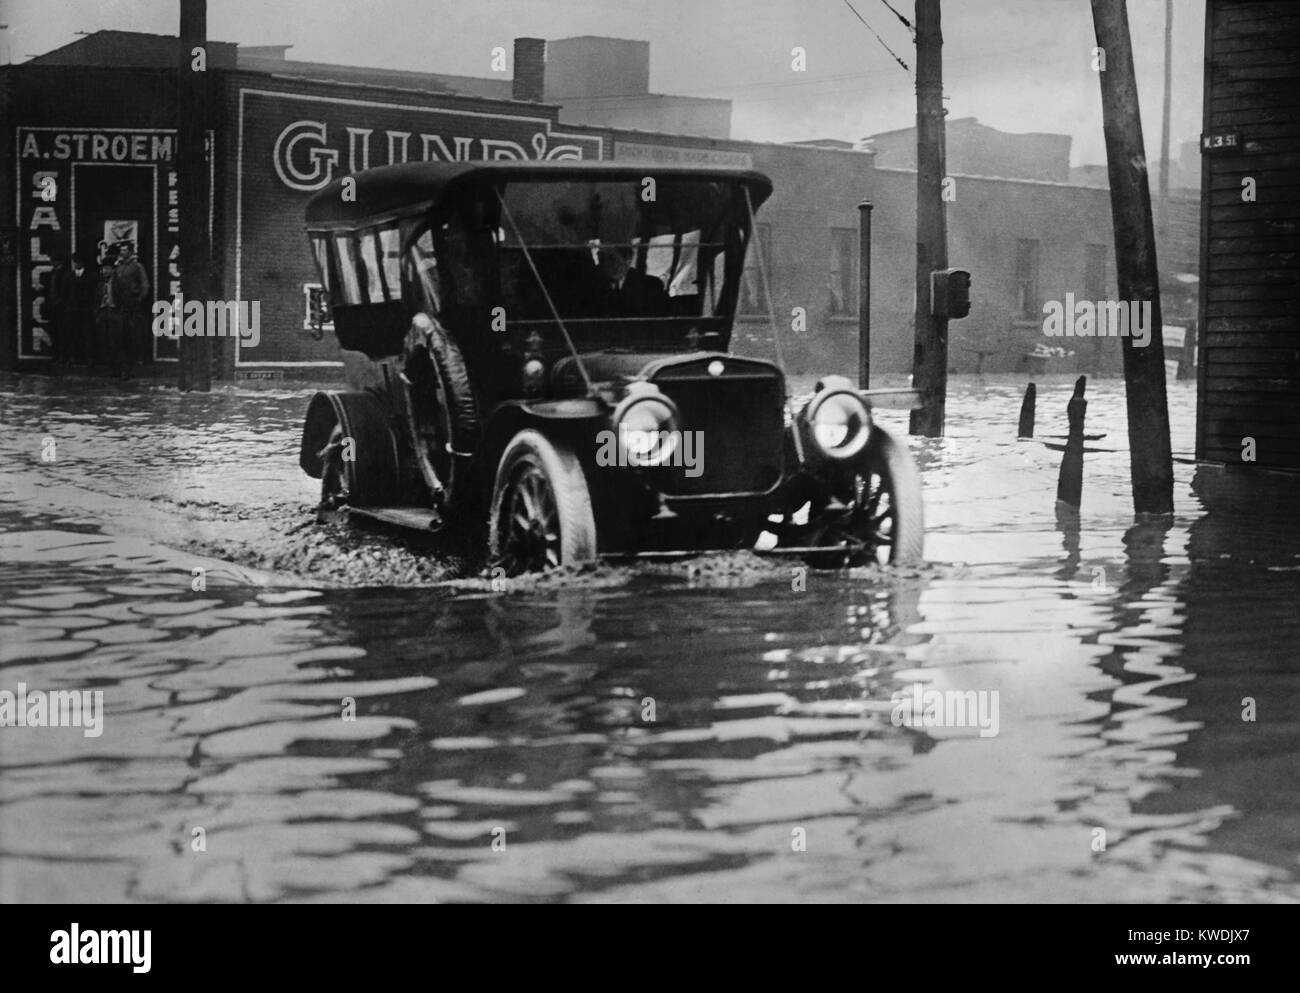 Ein Automobil fährt durch Axel hoch Wasser auf einem überfluteten Cleveland Street, wahrscheinlich im Jahr 1913. Die frühe Autos wurden mit hohen Abstände die rauen Straßen der Zeit zu navigieren. Die grosse Flut von 1913 war Ohios größte Wetter Katastrophe des frühen 20. Jahrhunderts (BSLOC 2017 17 95) Stockfoto